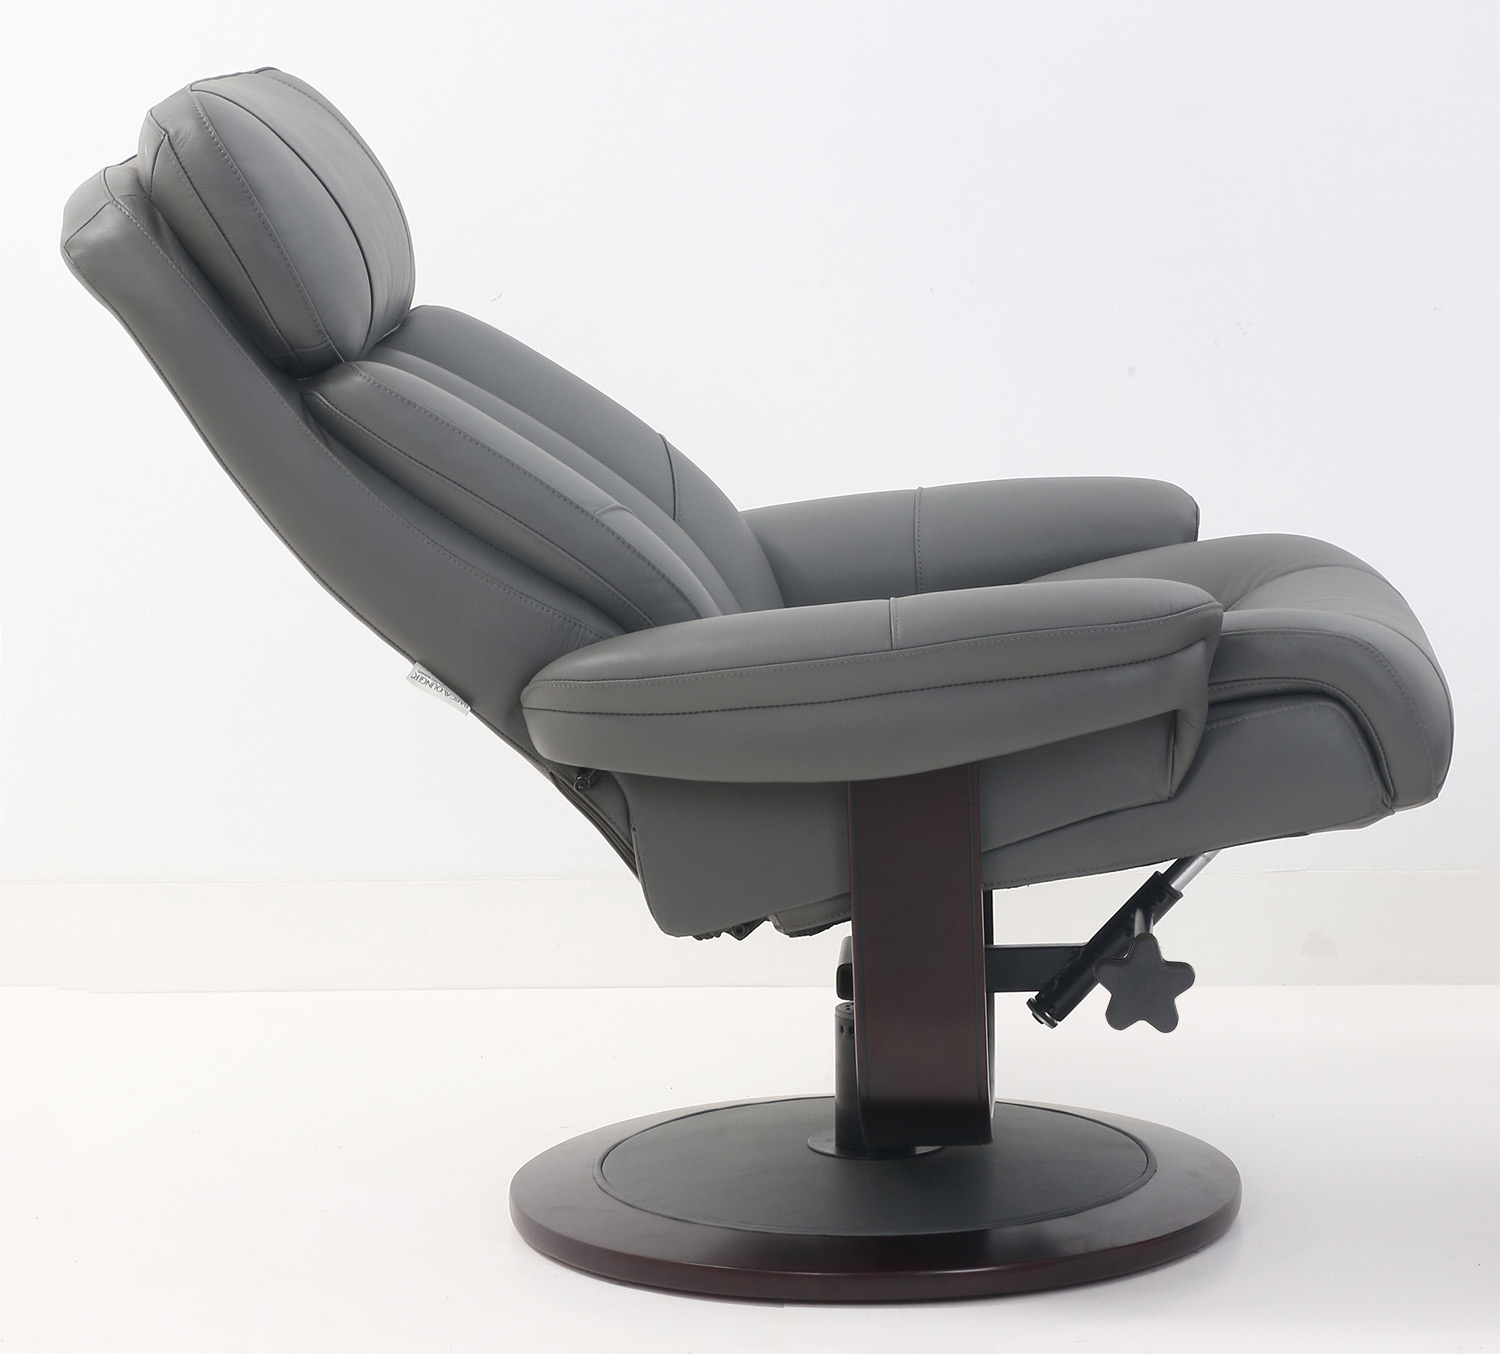 Barcalounger Oakleigh Pedestal Recliner Chair and Ottoman - Marlene Gray/Leather match